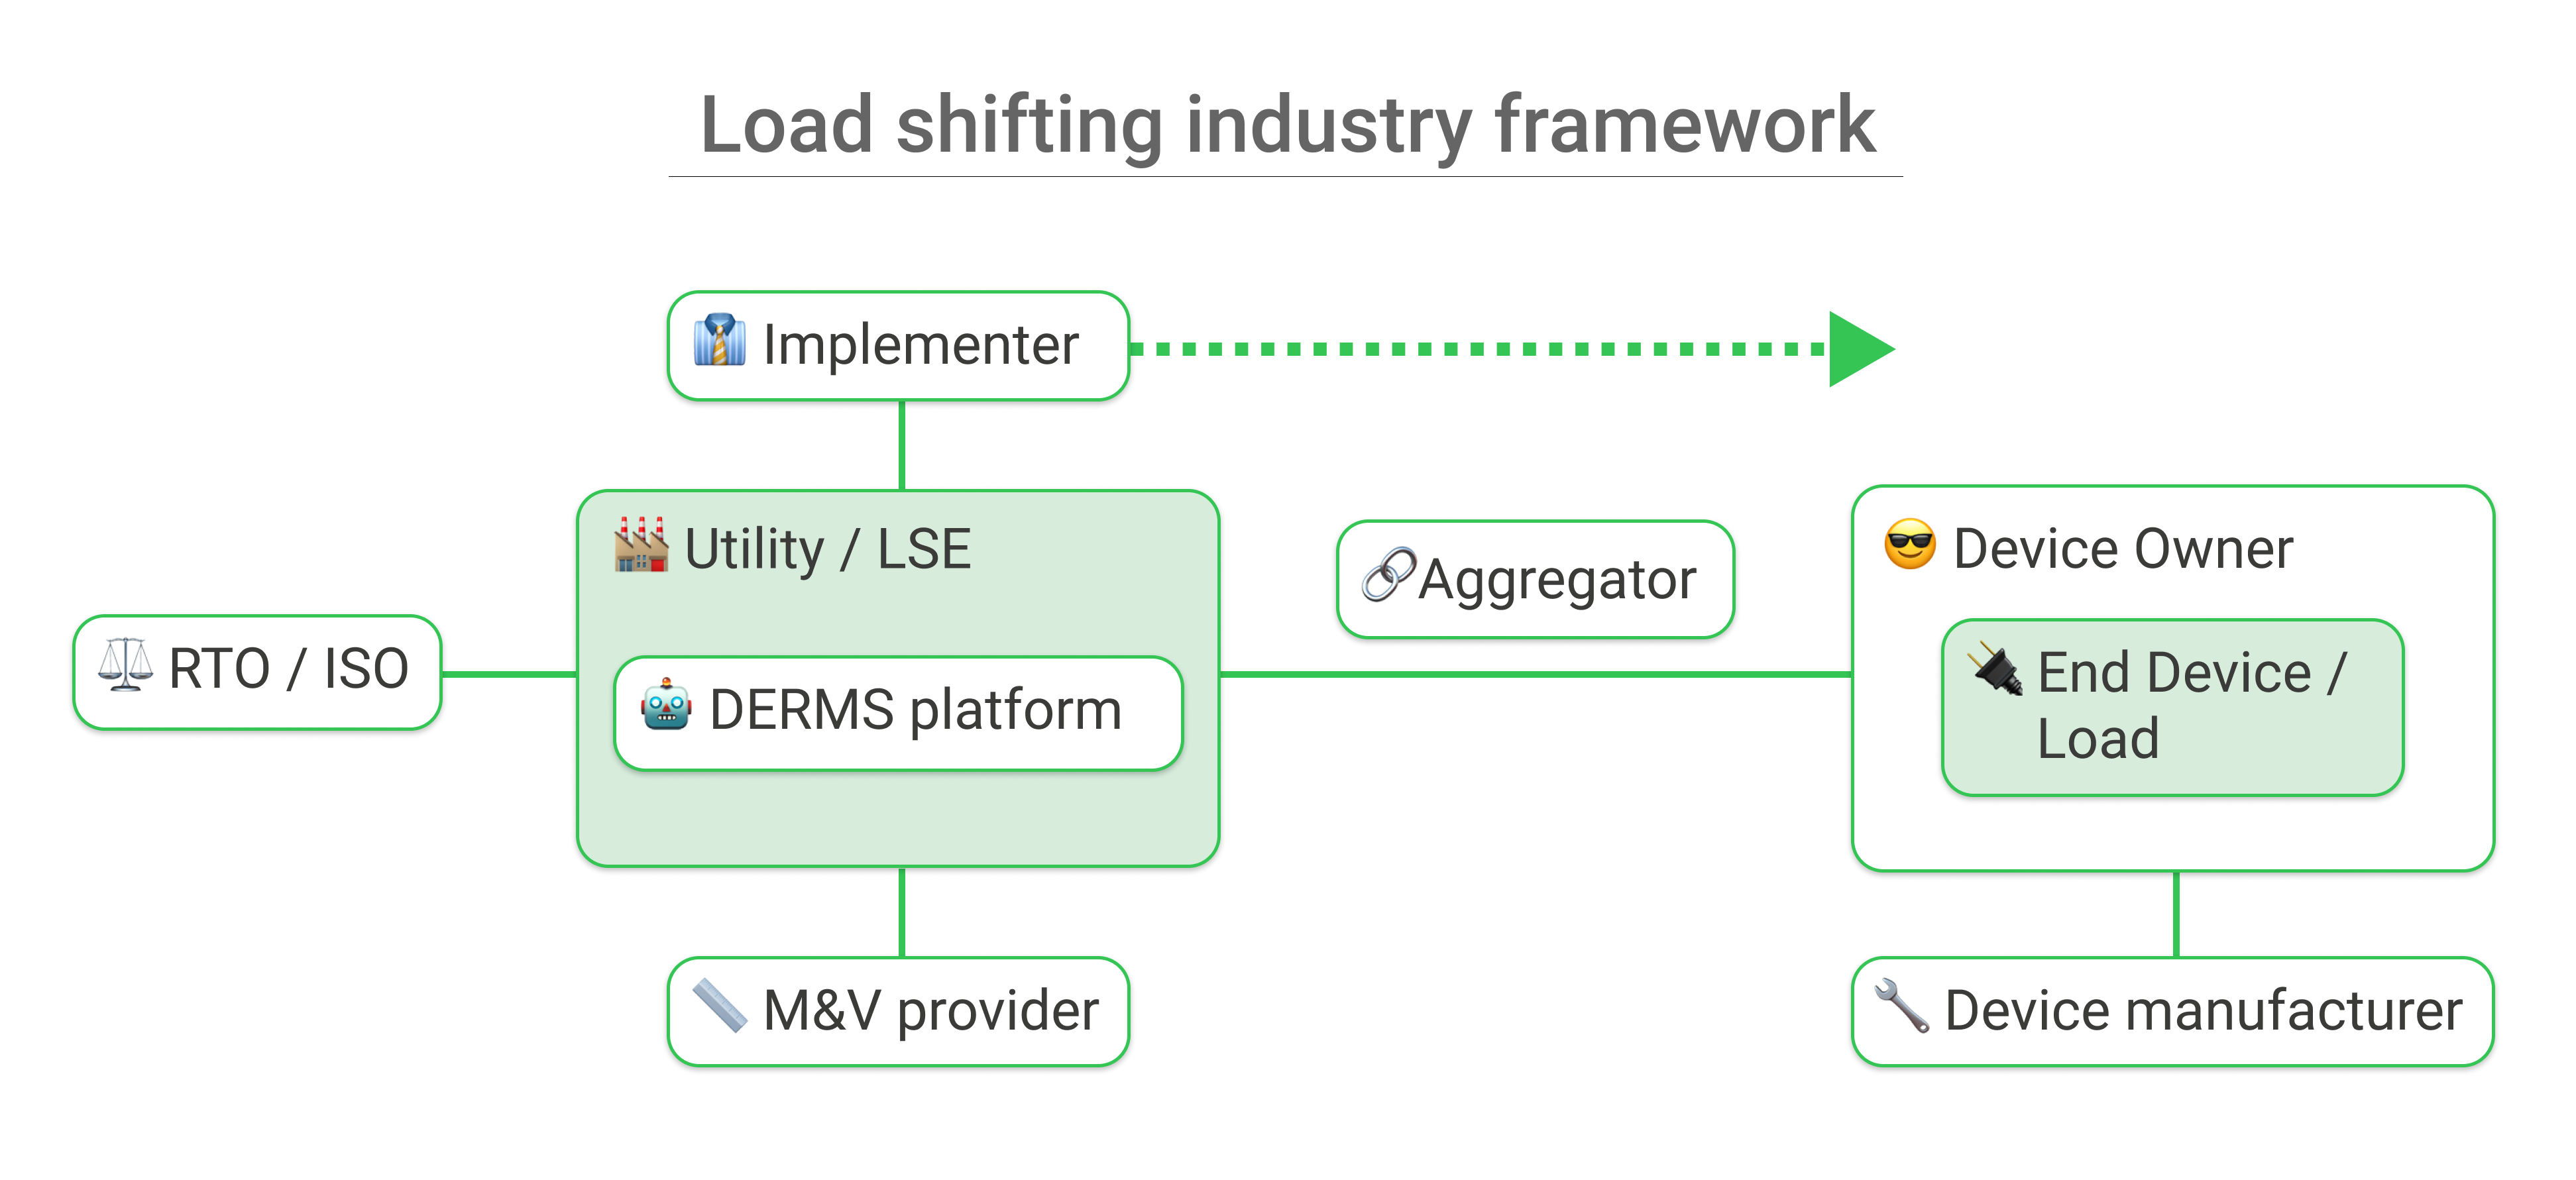 Blog Image: Load shifting industry framework